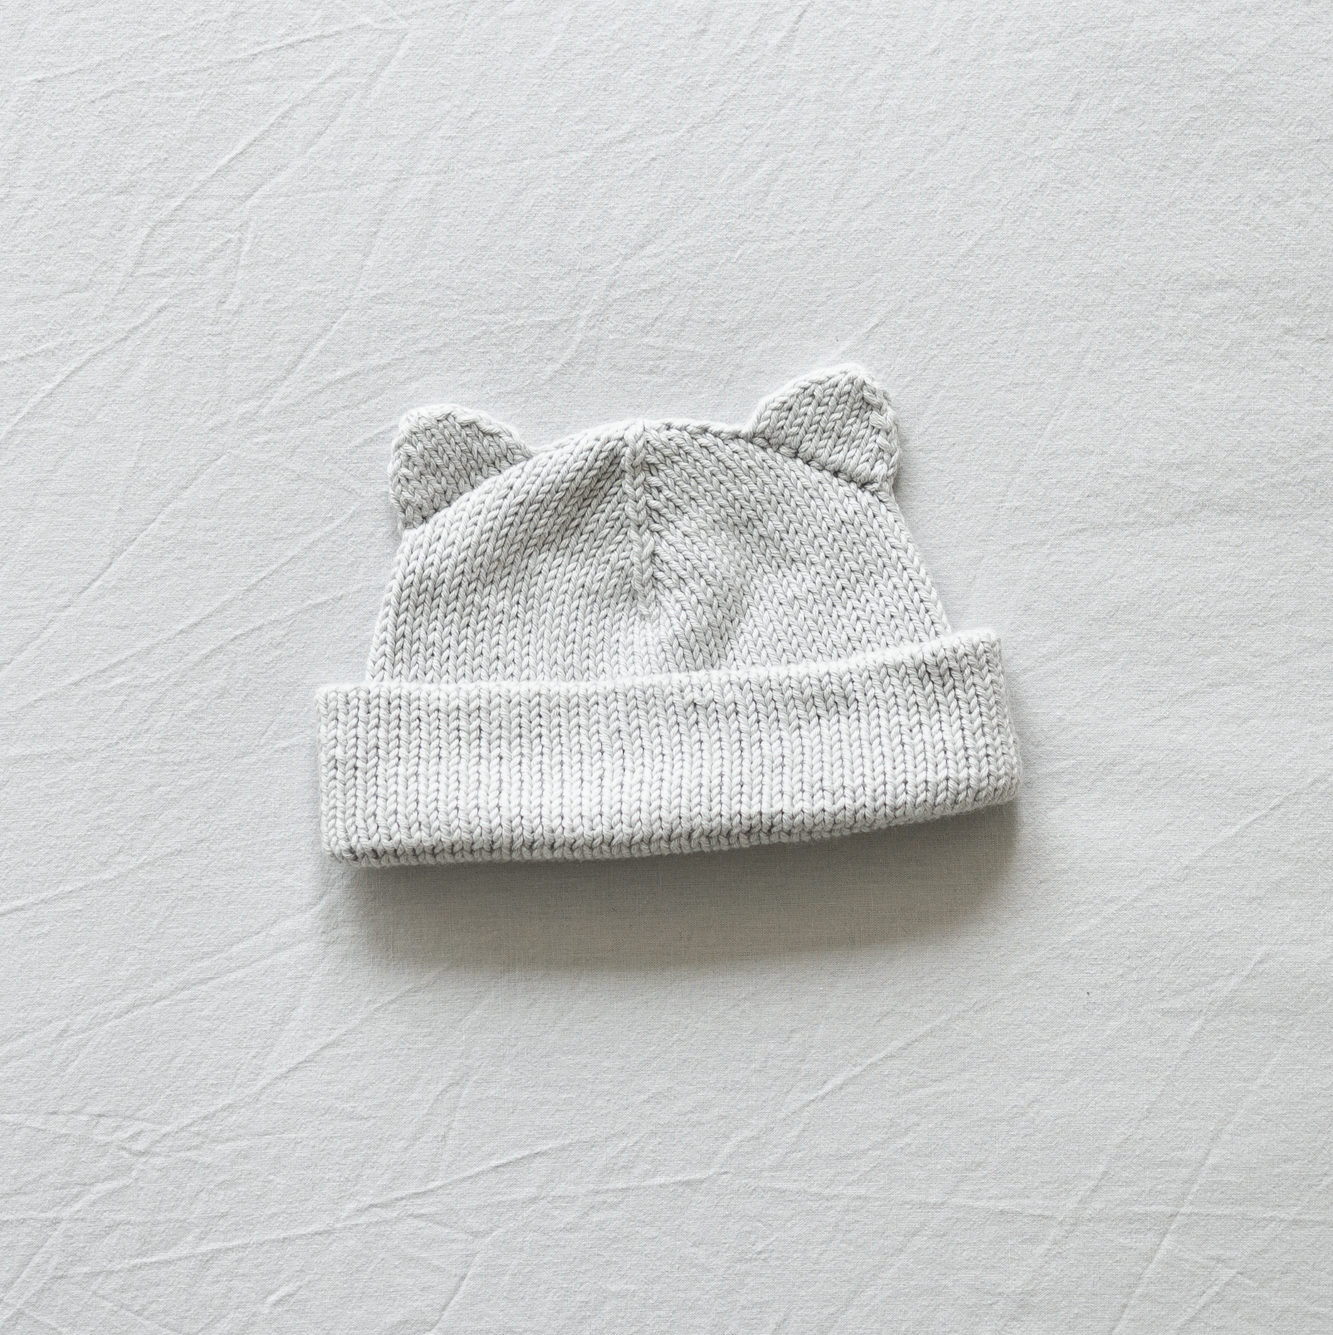  - Bear me hat | Baby bear hat | Knitting kit cotton - by HipKnitShop - 14/08/2020